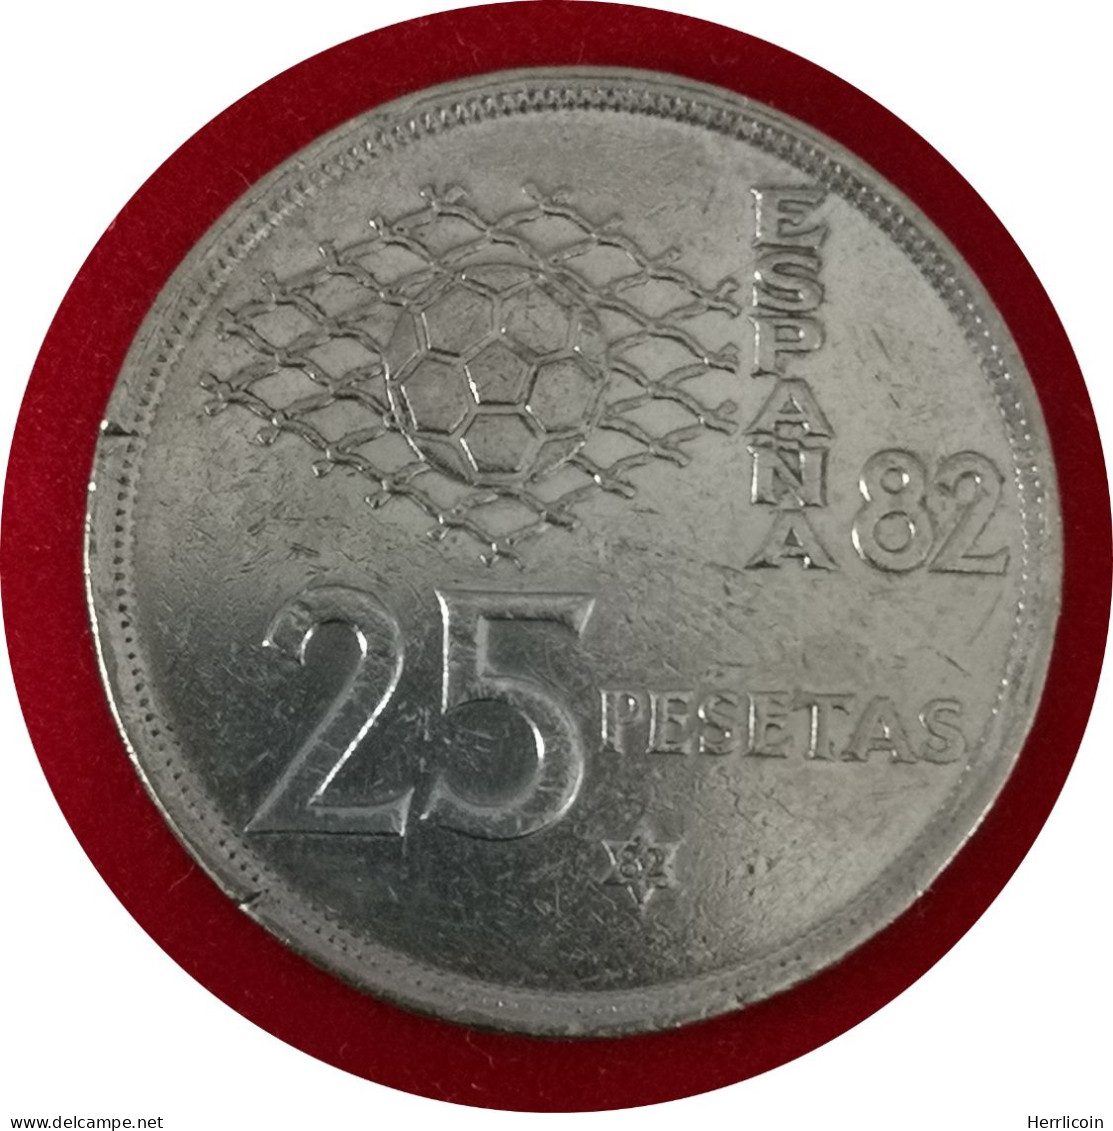 Monnaie Espagne - 1982 - 25 Pesetas España 82 - 25 Peseta